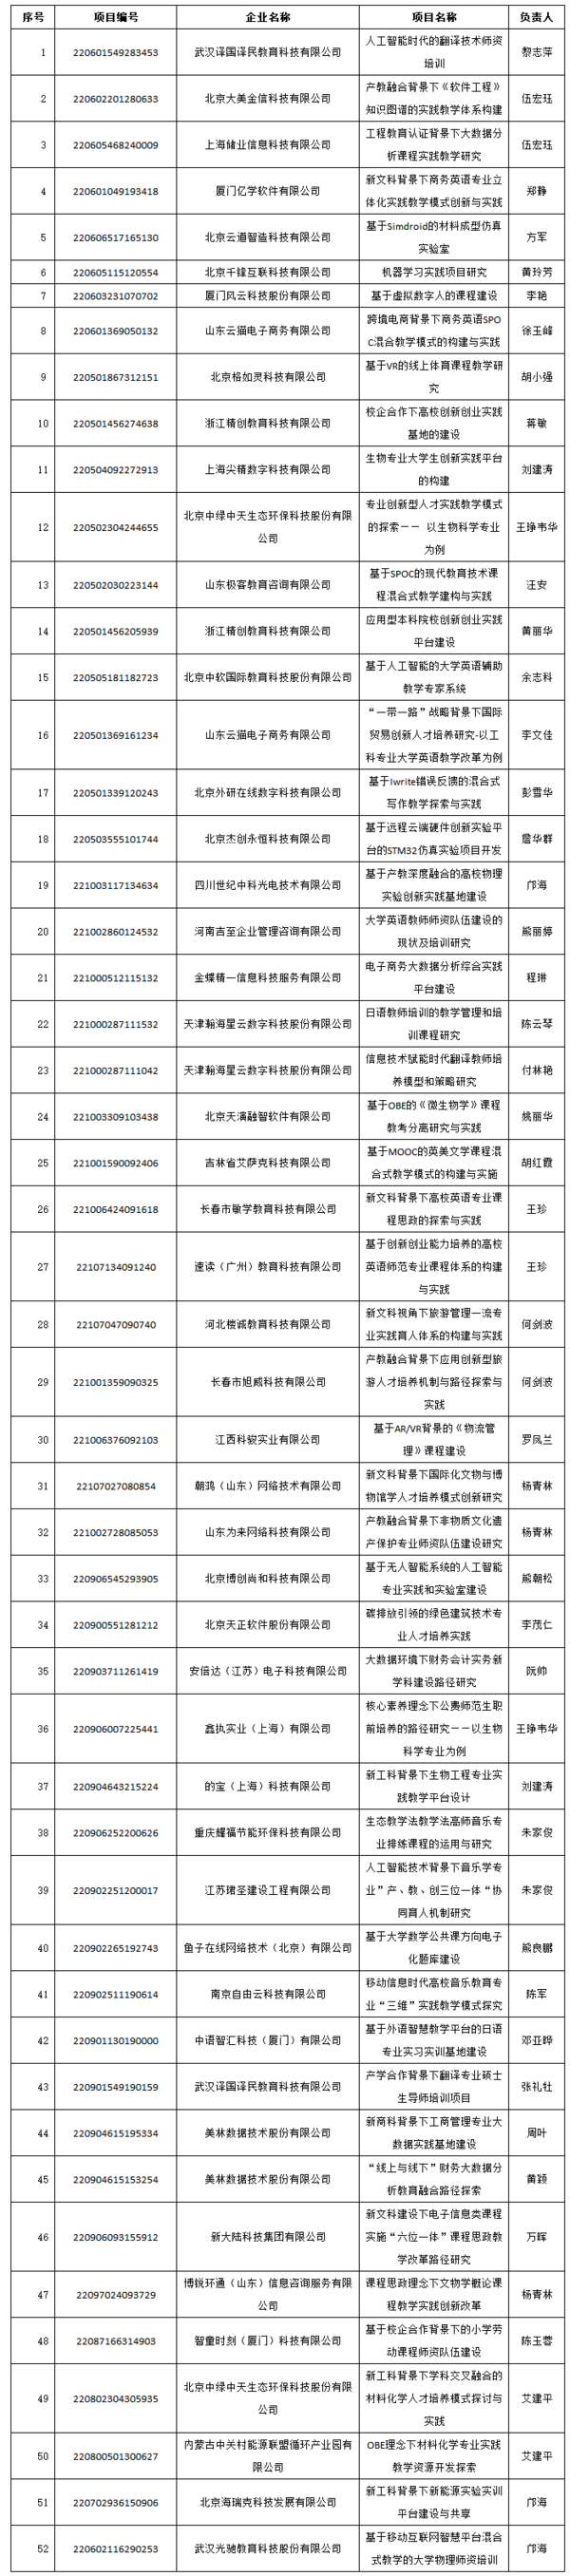 江西科技师范大学获批52项教育部产学合作协同育人项目